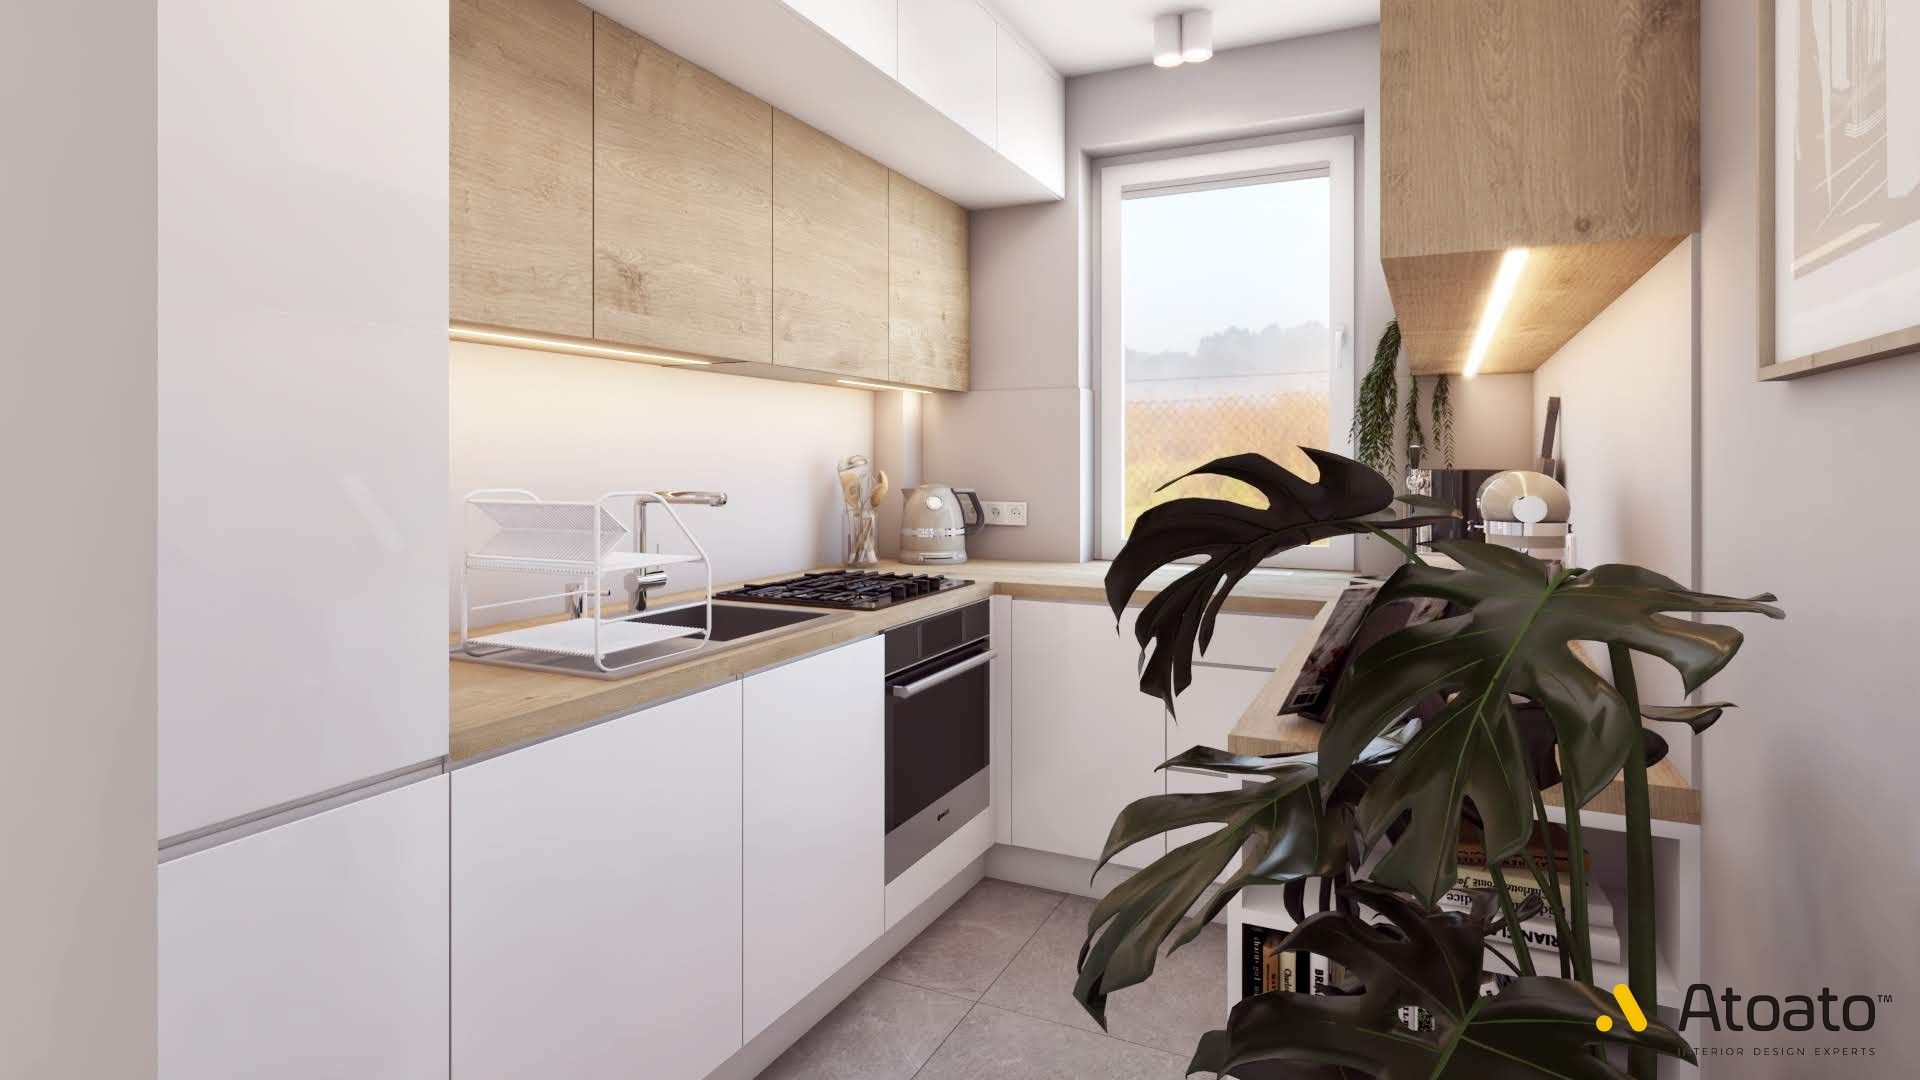 Metamorfoza mieszkania w bloku, atoato atoato 北欧デザインの キッチン